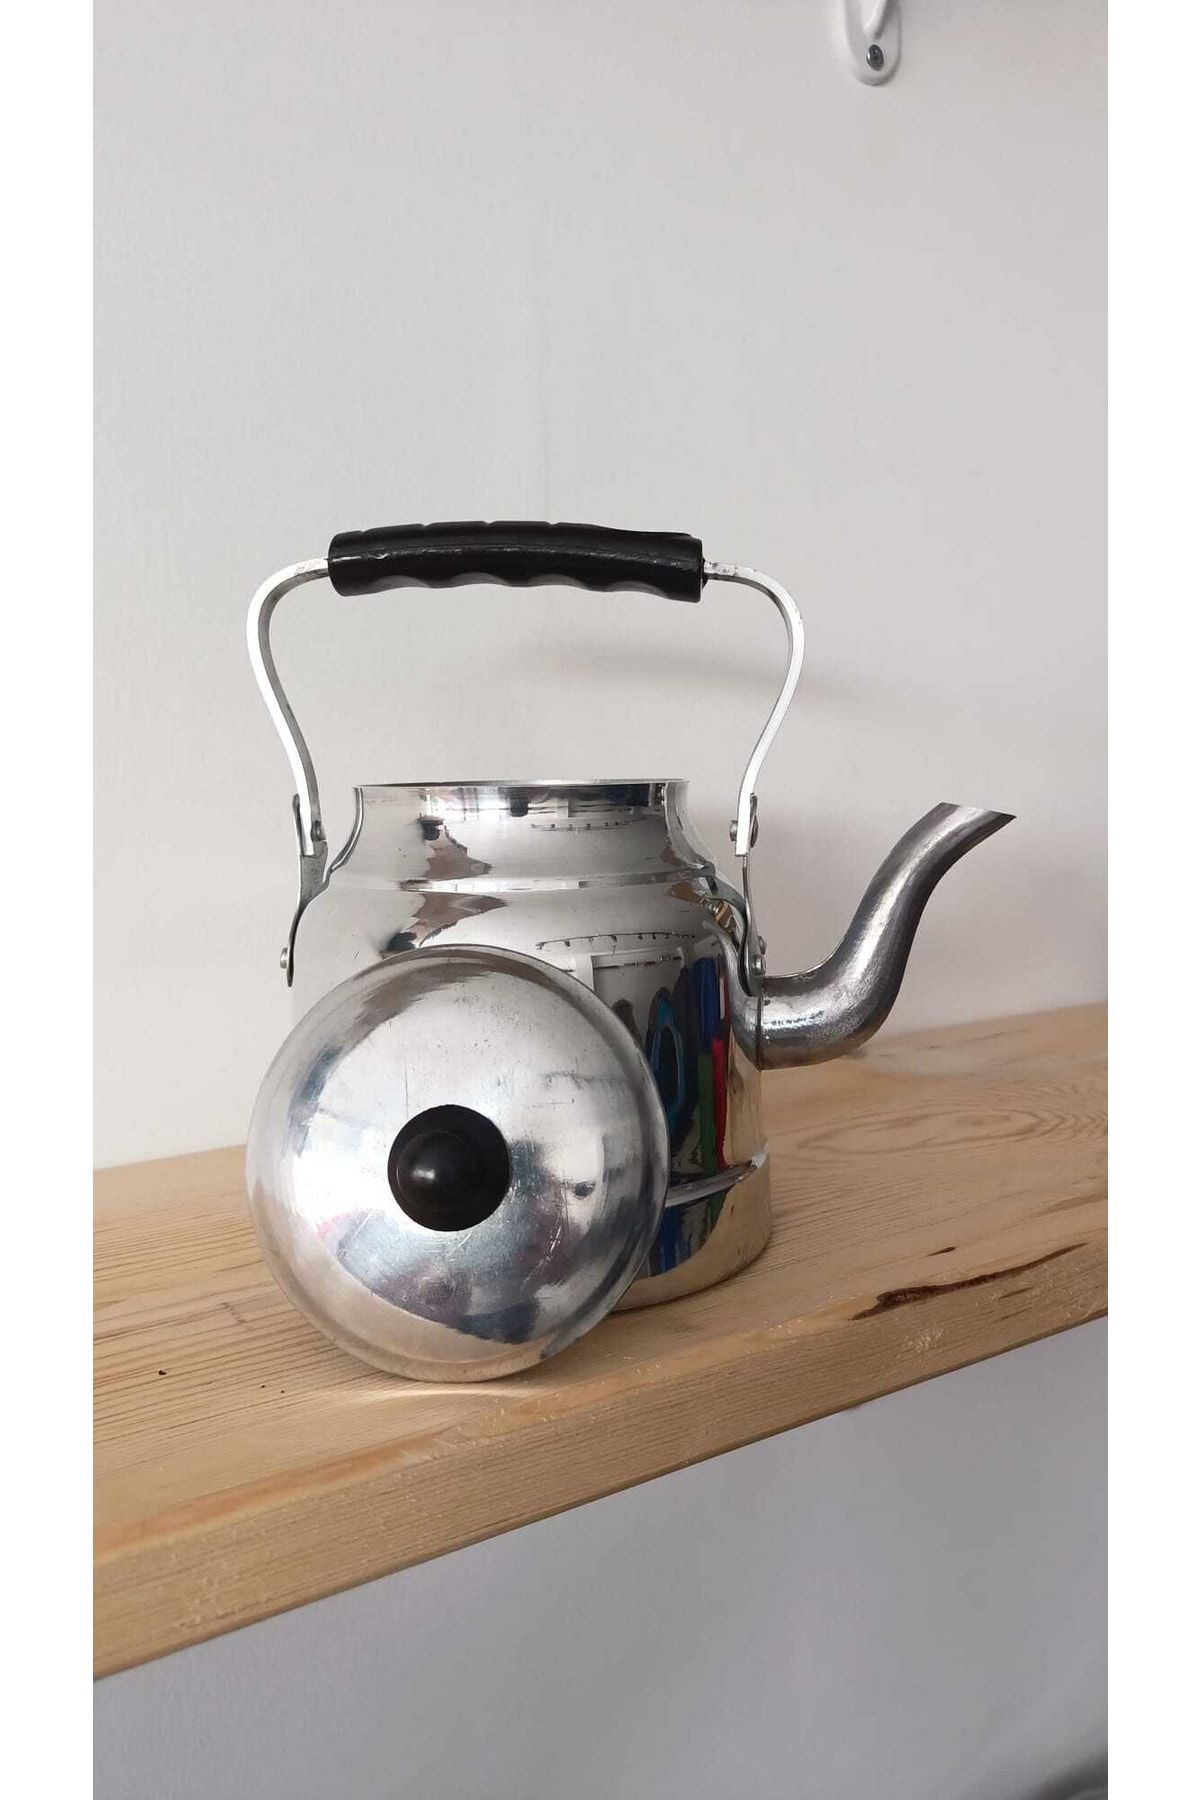 ÜZÜM ÇELİK Ateş Üstü Çaydanlık 1.4 Lt Kara Çaydanlık Alüminyum Çelik